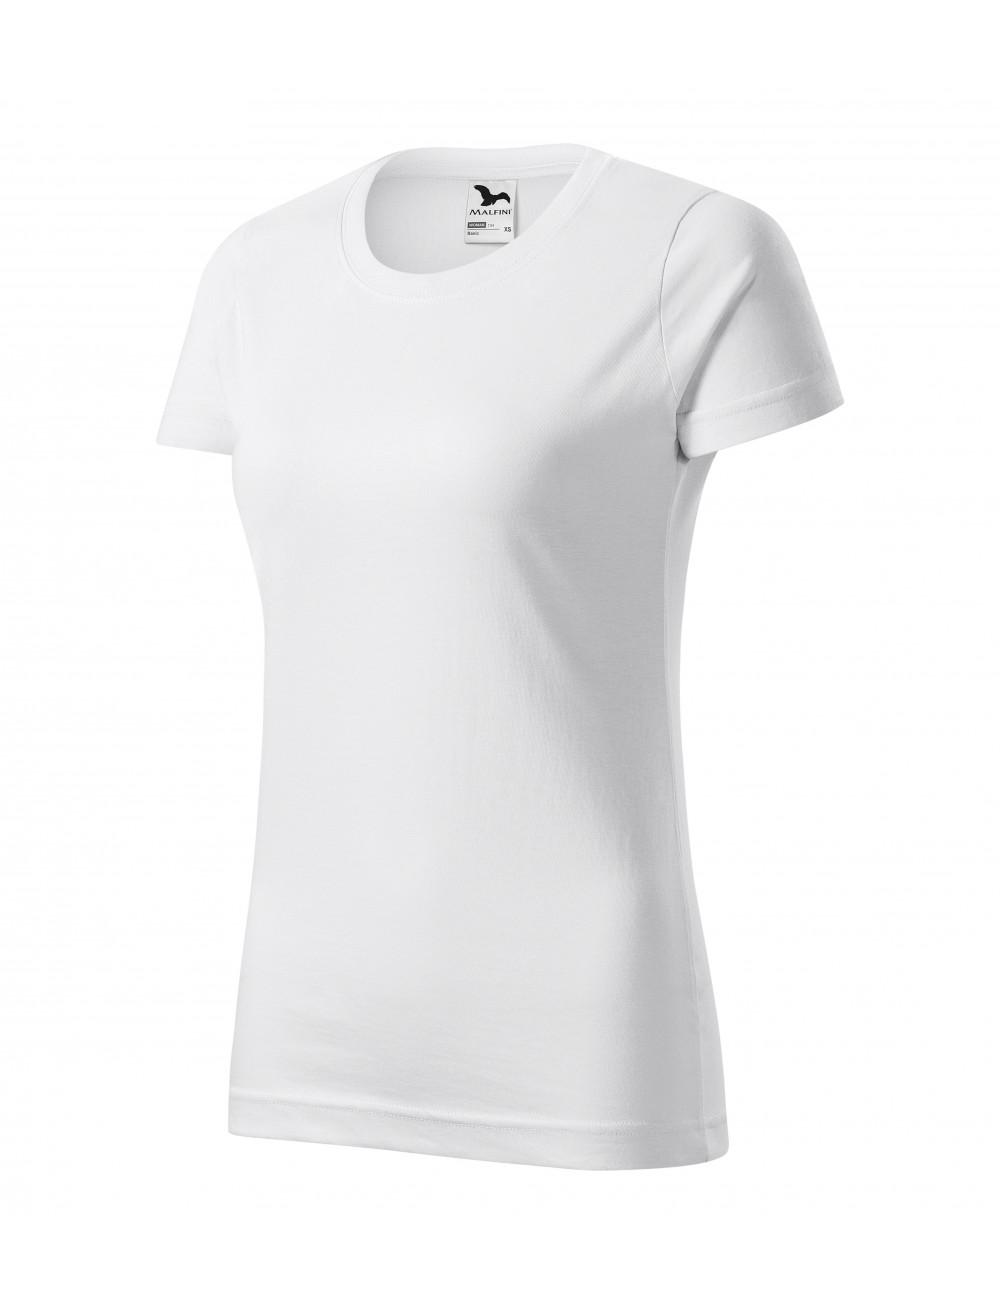 Koszulka damska basic 134 biały Adler Malfini